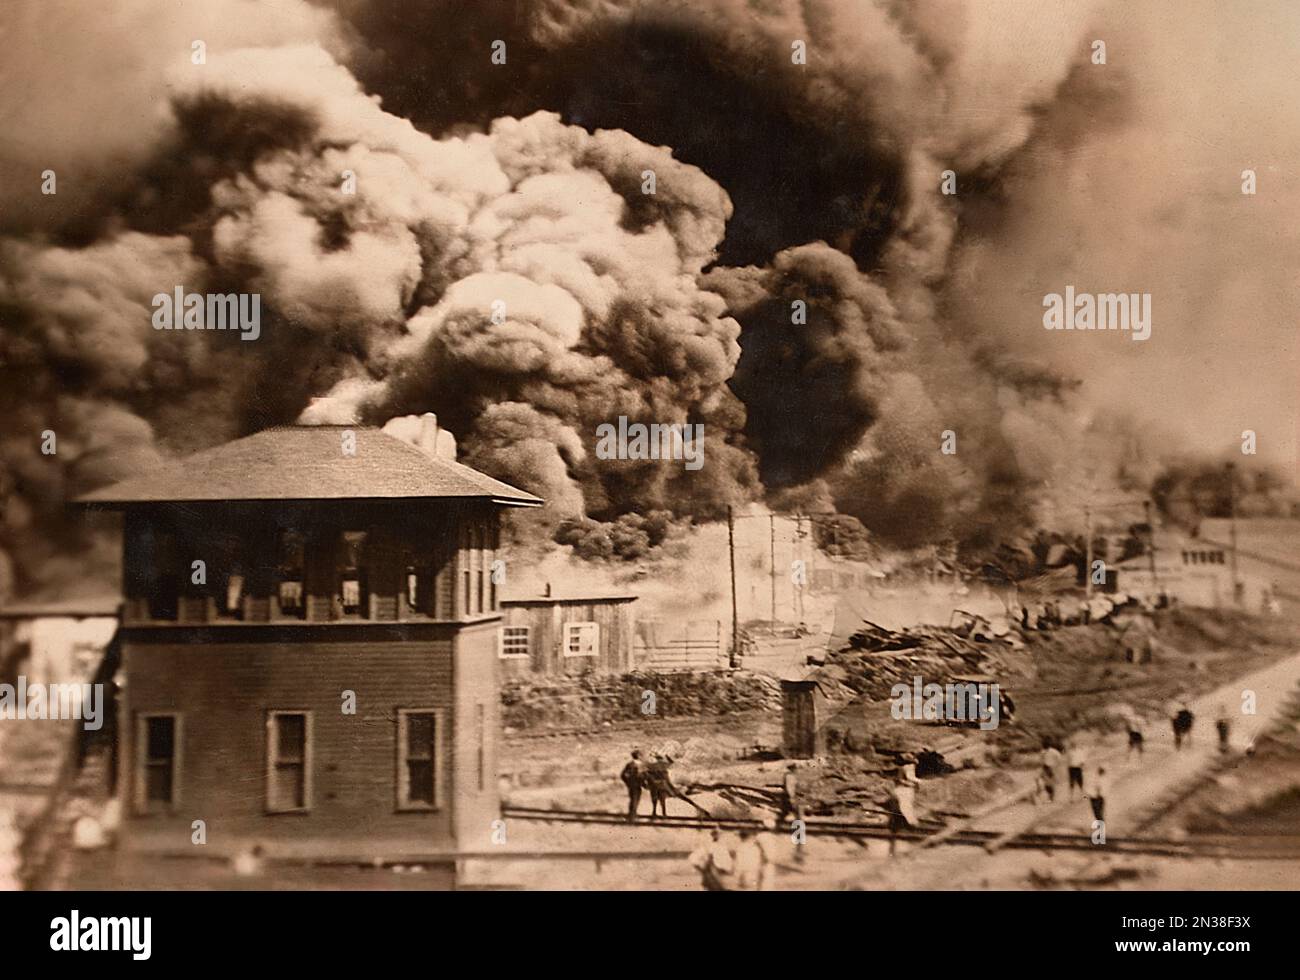 Bâtiments incendiés pendant les émeutes de la course, Greenwood District, Tulsa, Oklahoma, États-Unis, Artiste non identifié, juin 1921 Banque D'Images